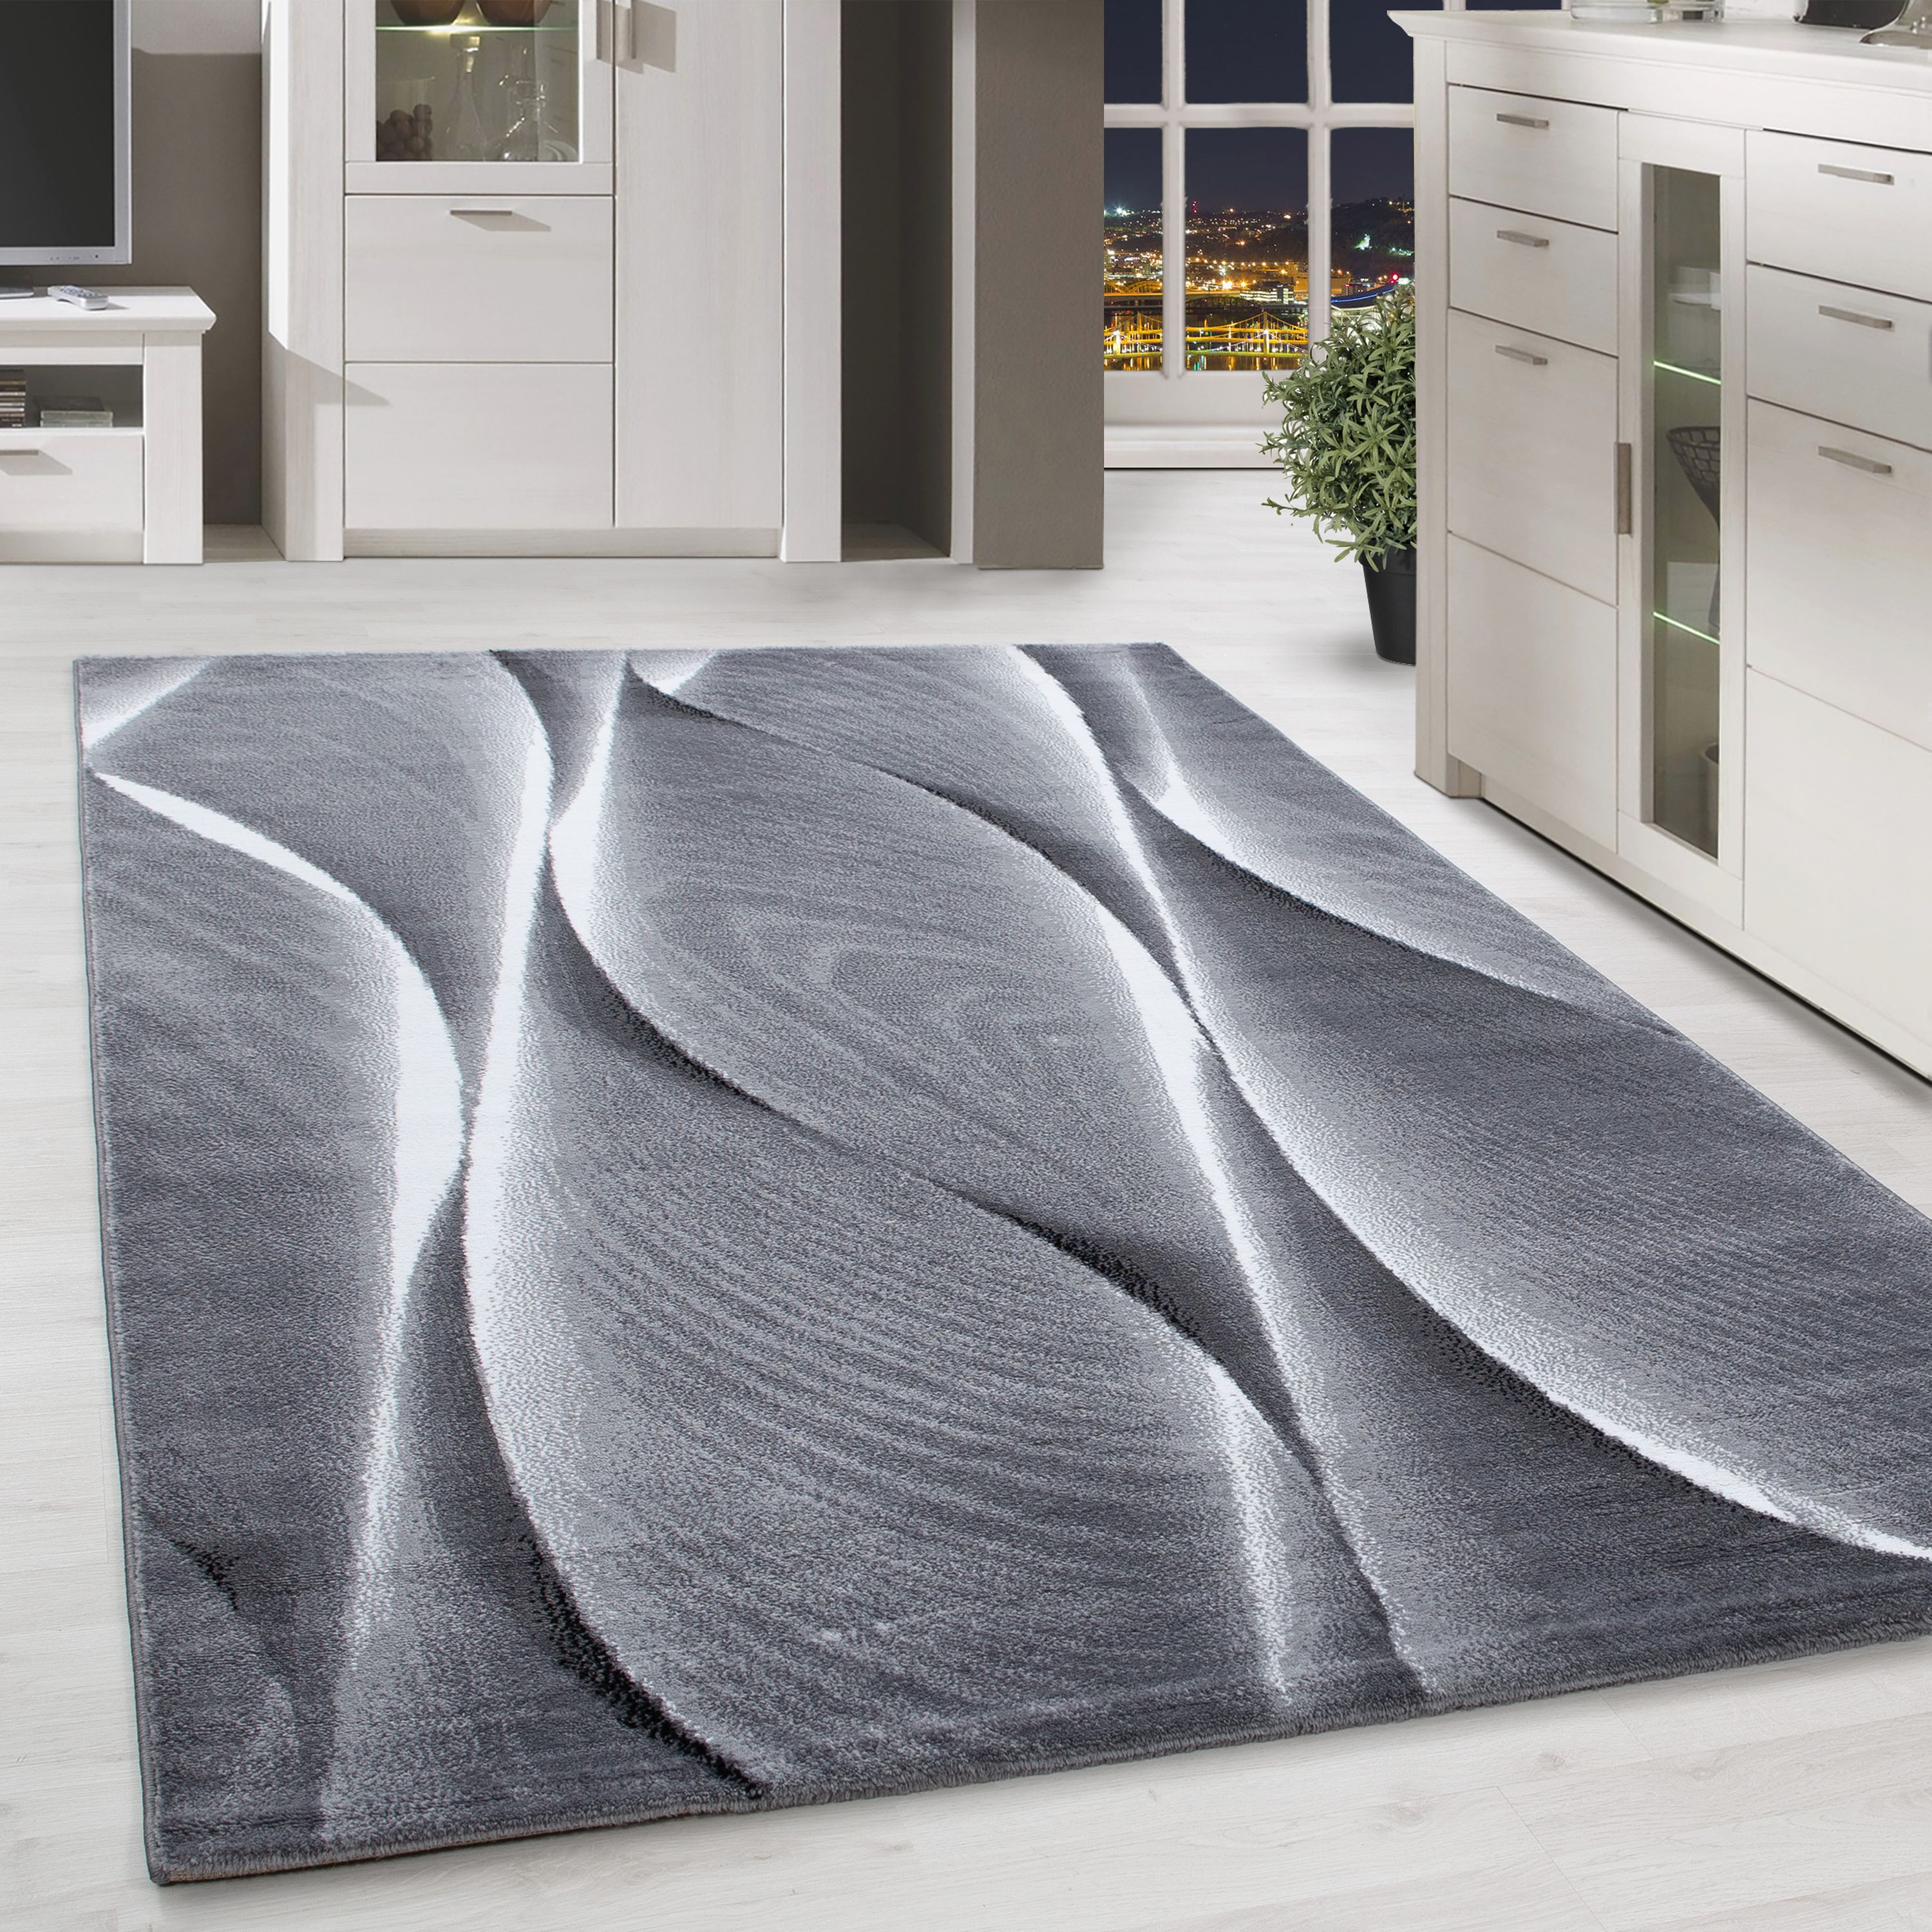 Kurzflor Teppich für Wohnzimmer Teppich Läufer Schatten Muster Grau Schwarz mel.